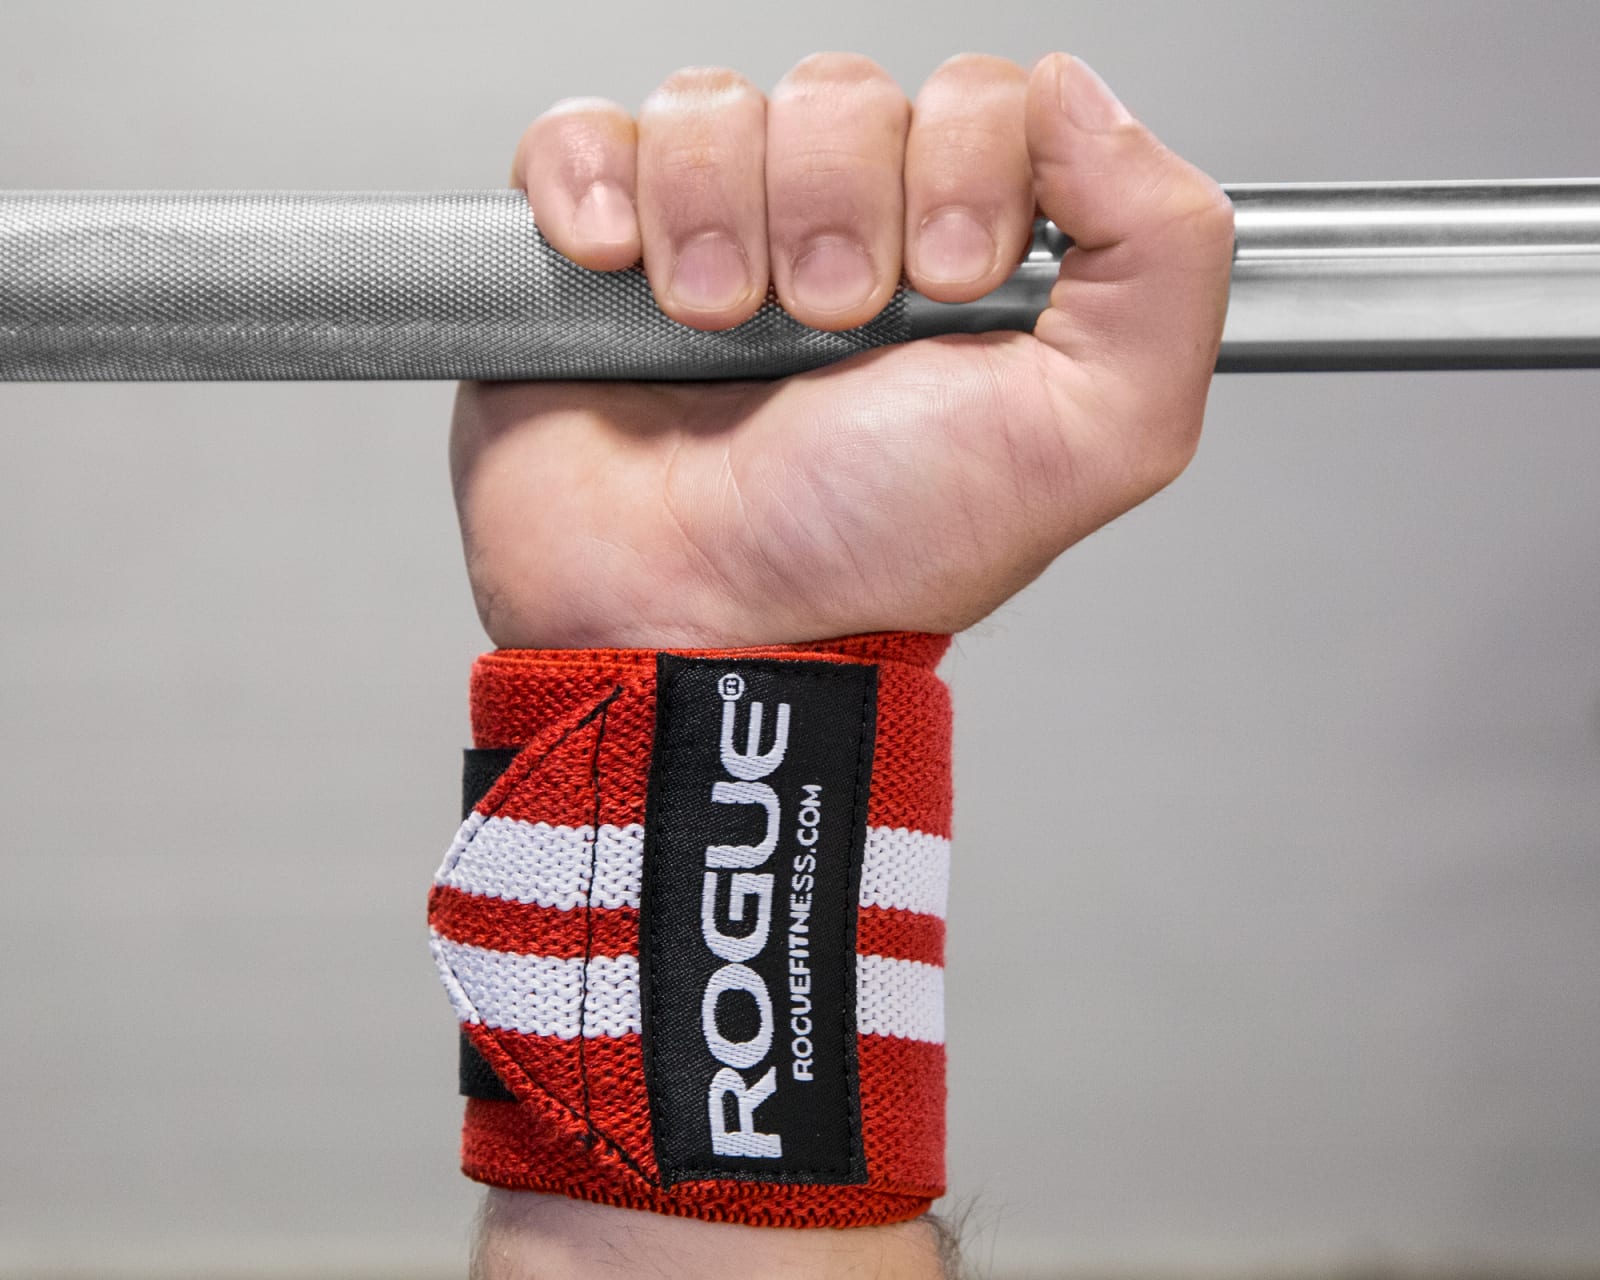 Design Style Poignet Bandages Wrist Wraps Poignet Bandage Force Sport Set